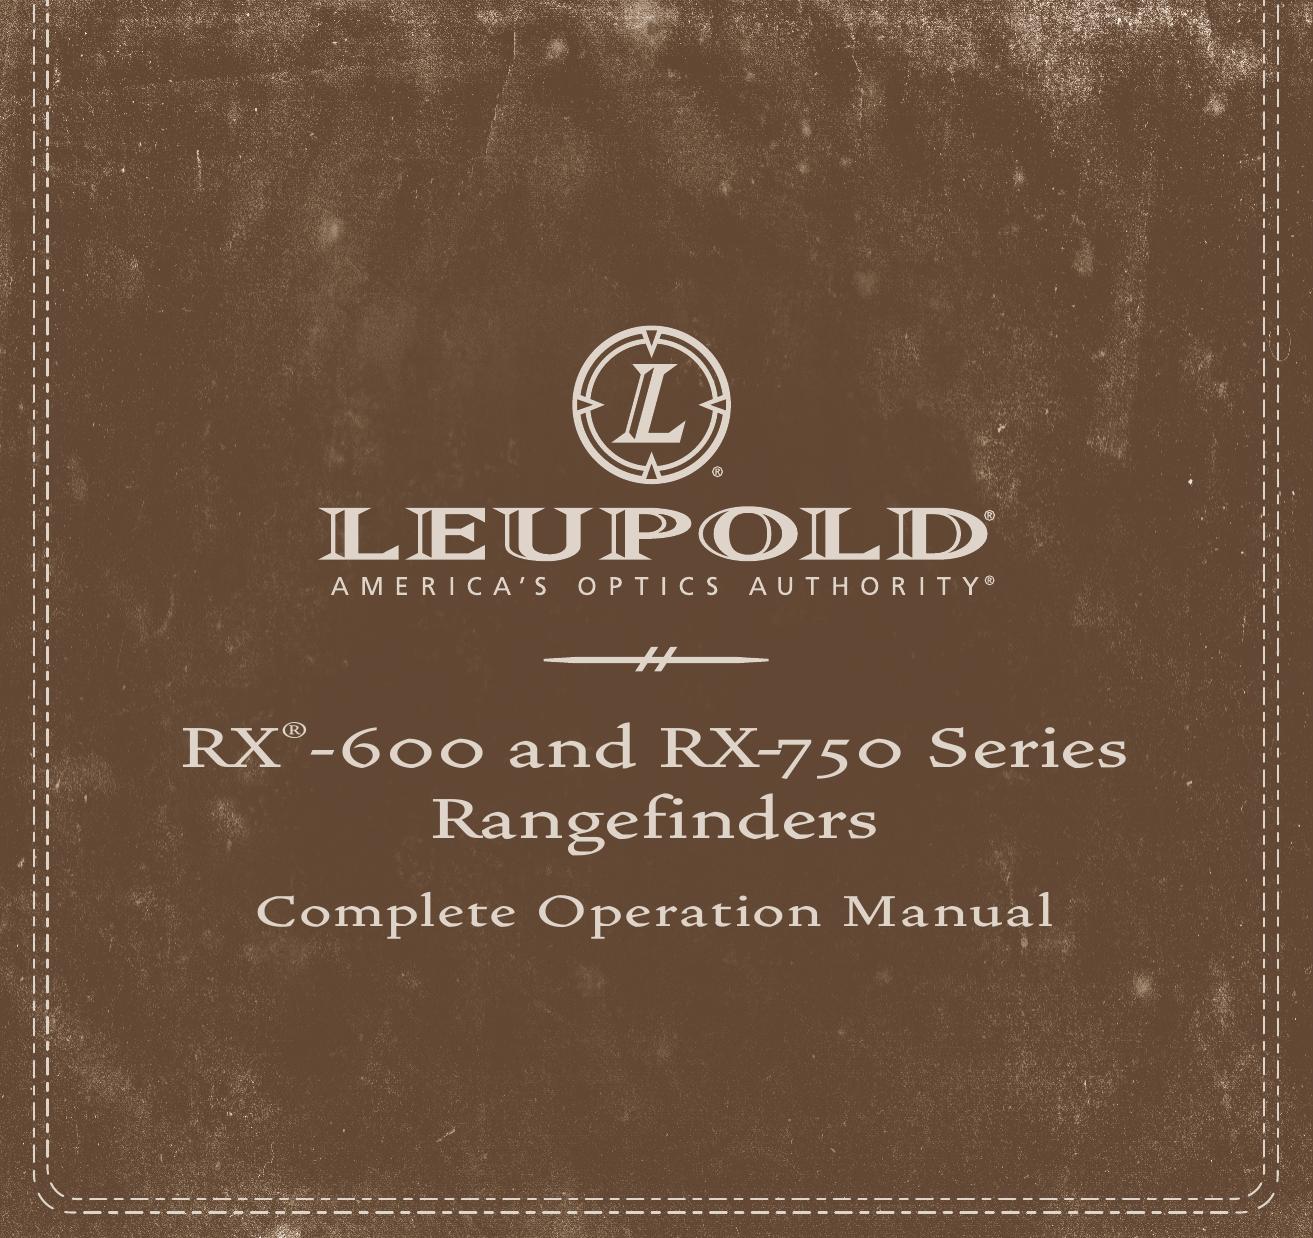 Leupold RX-600 Series Film Camera User Manual